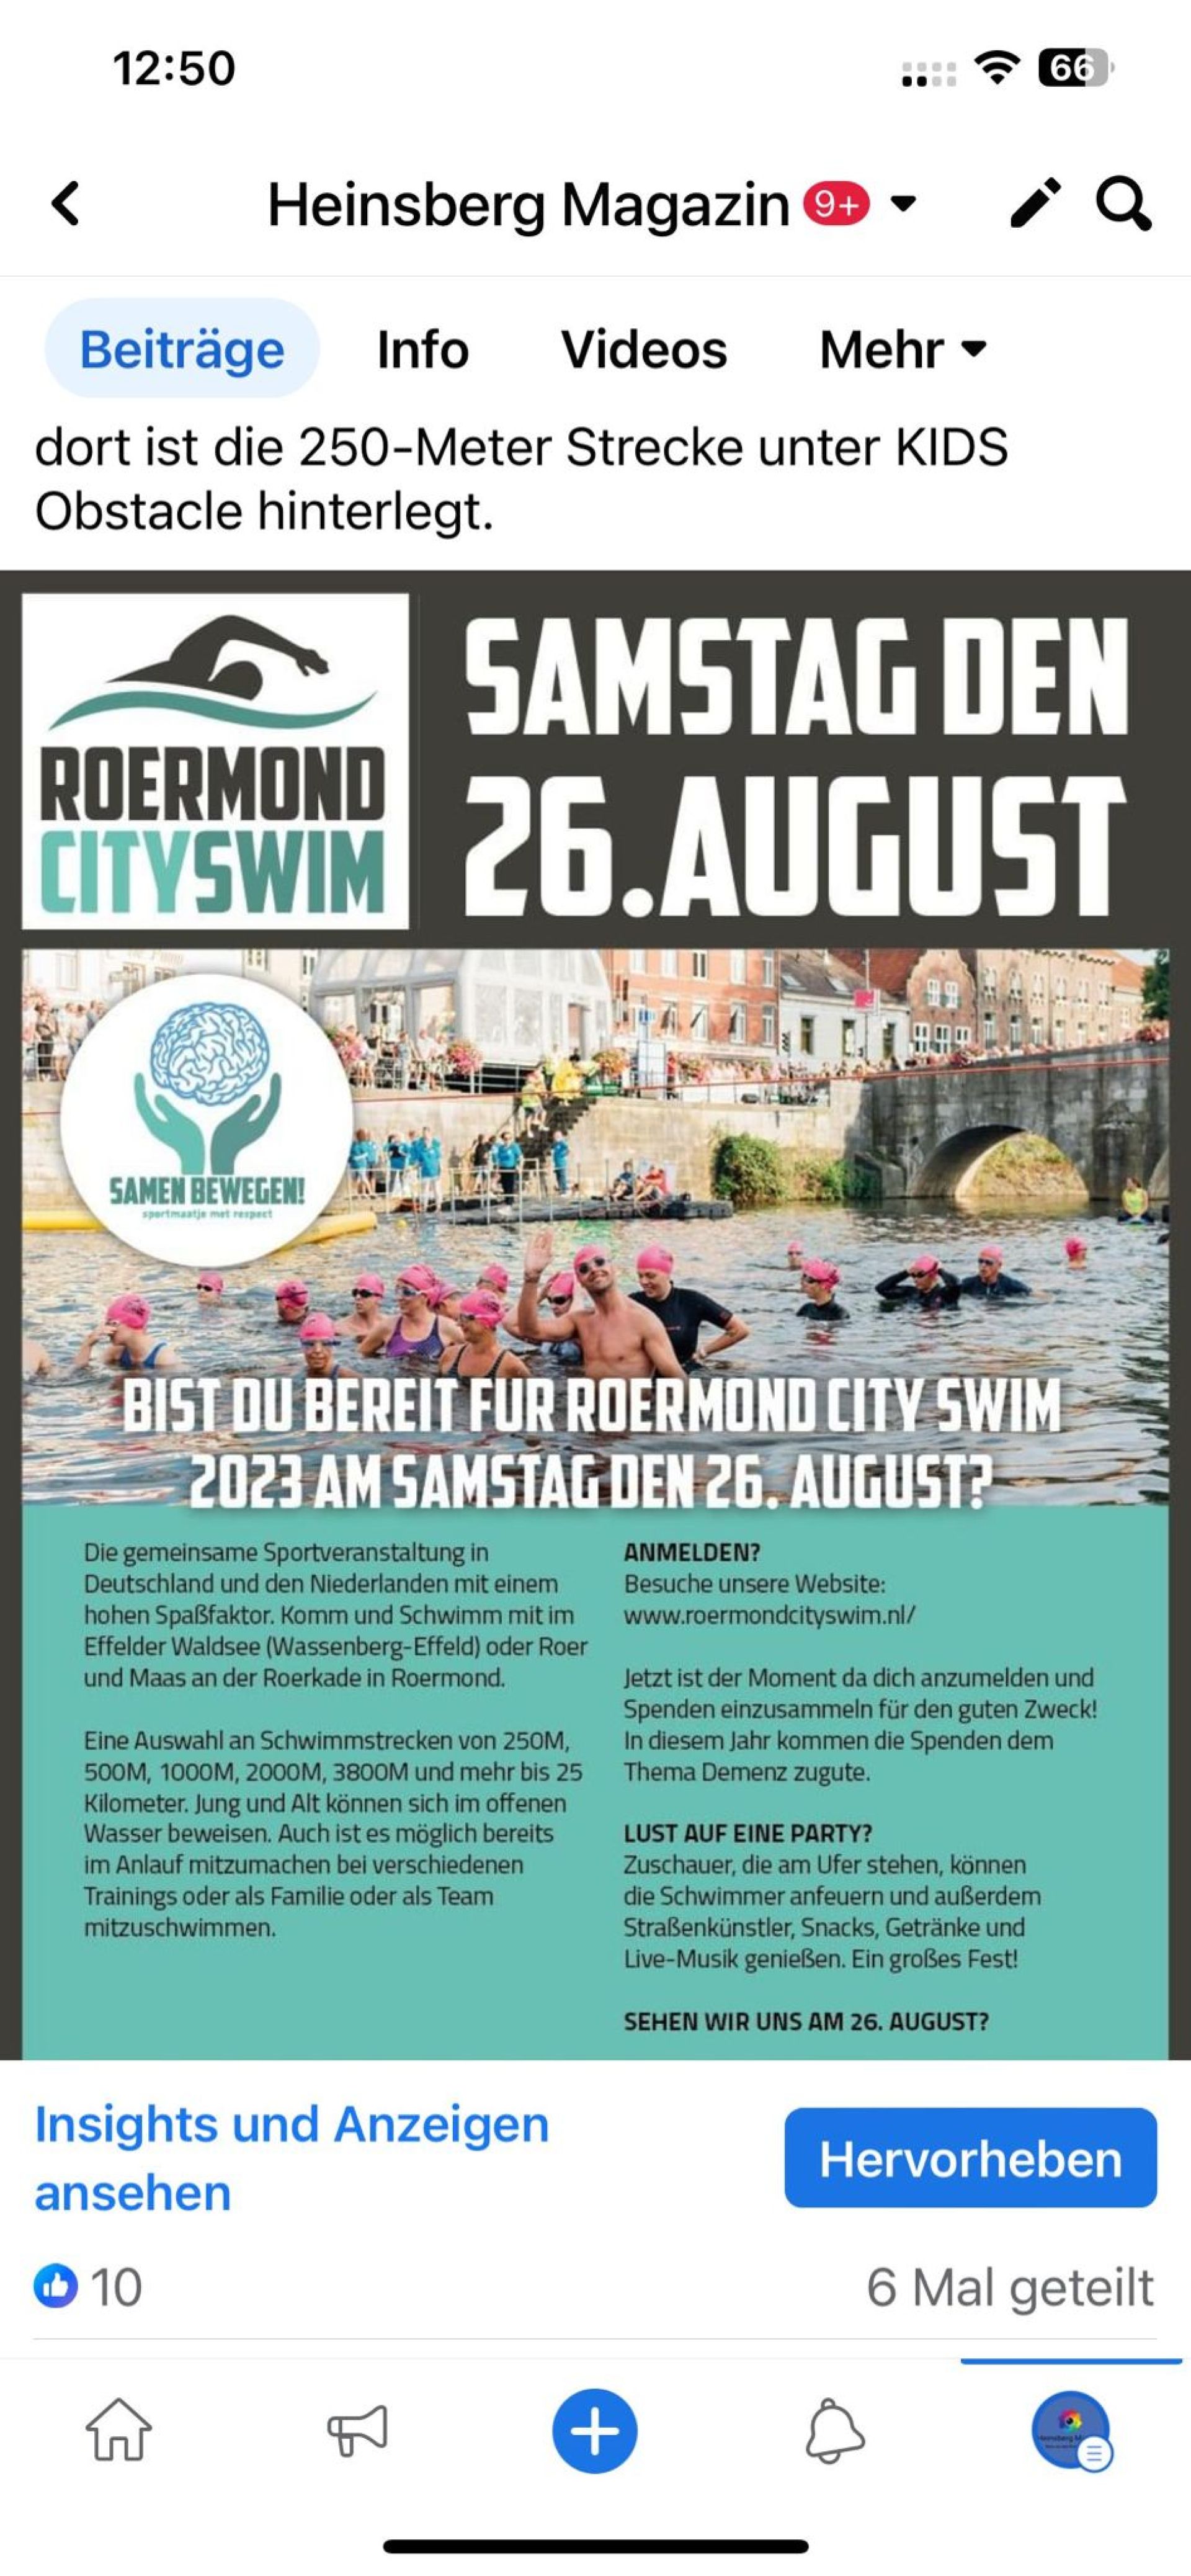 Samstag den 26. August startet wieder der Roermond Cityswim